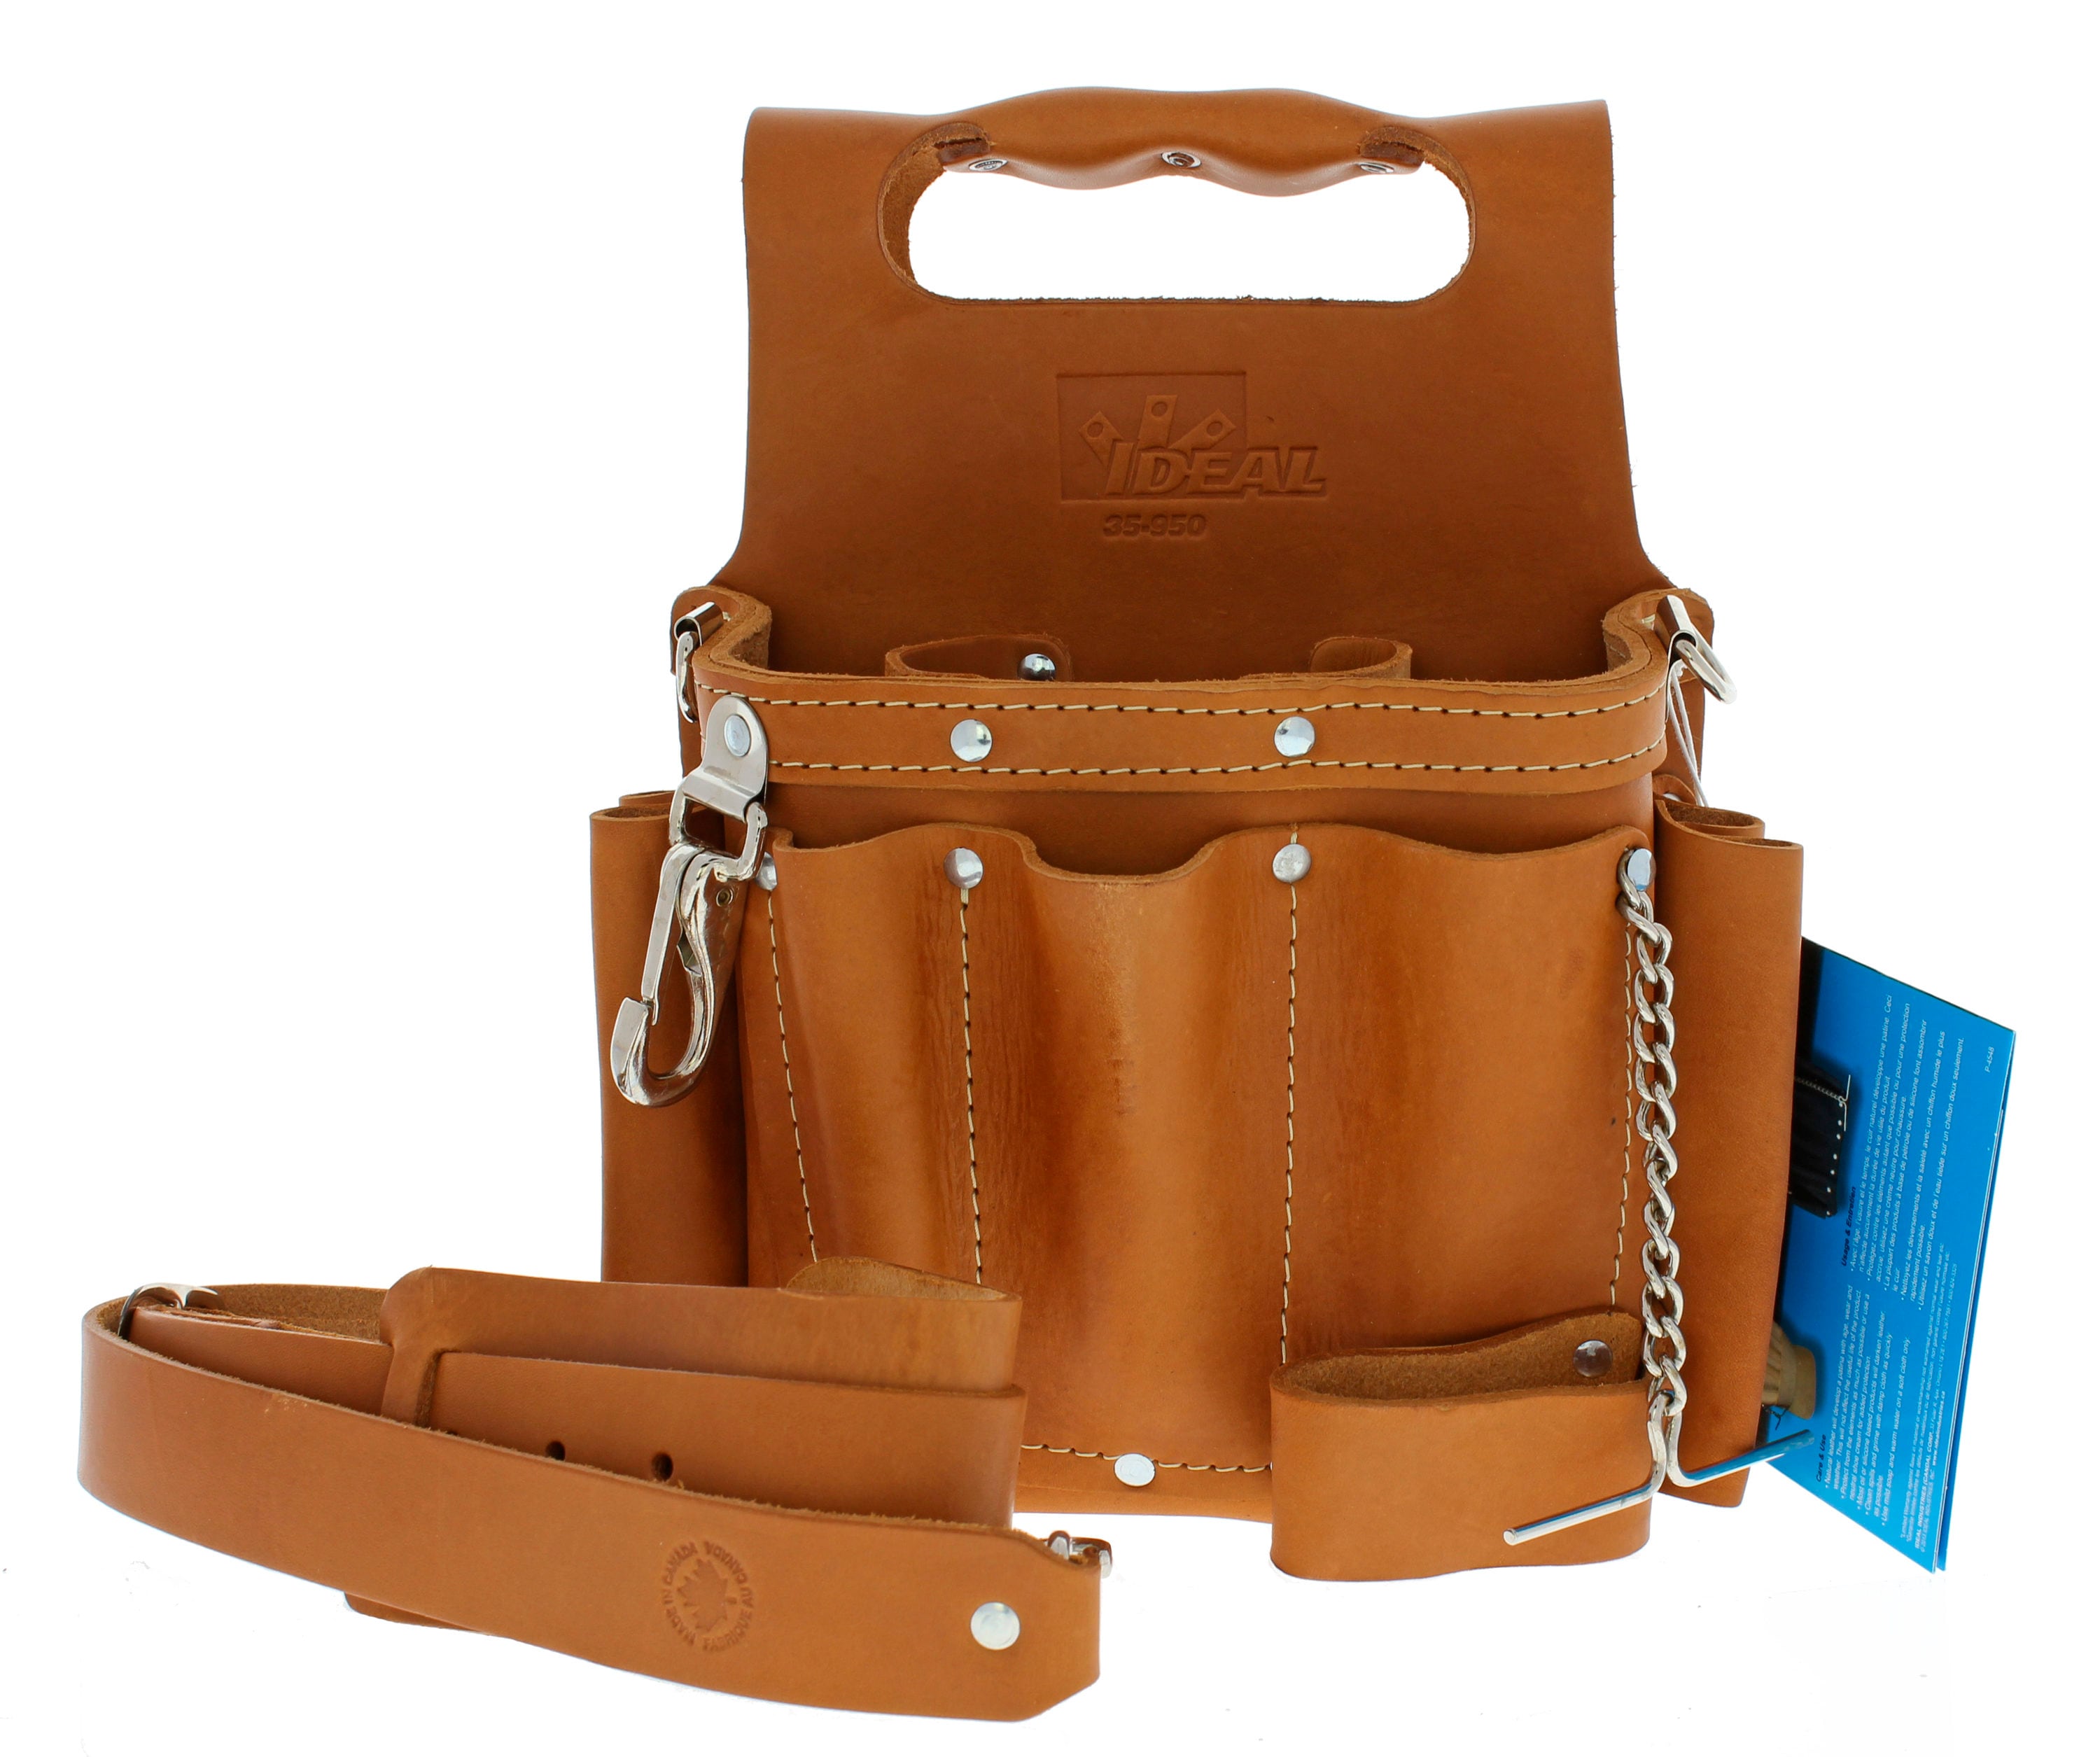 Canvas Bag Strap Connectors Bag Accessories for Pouch Bag 